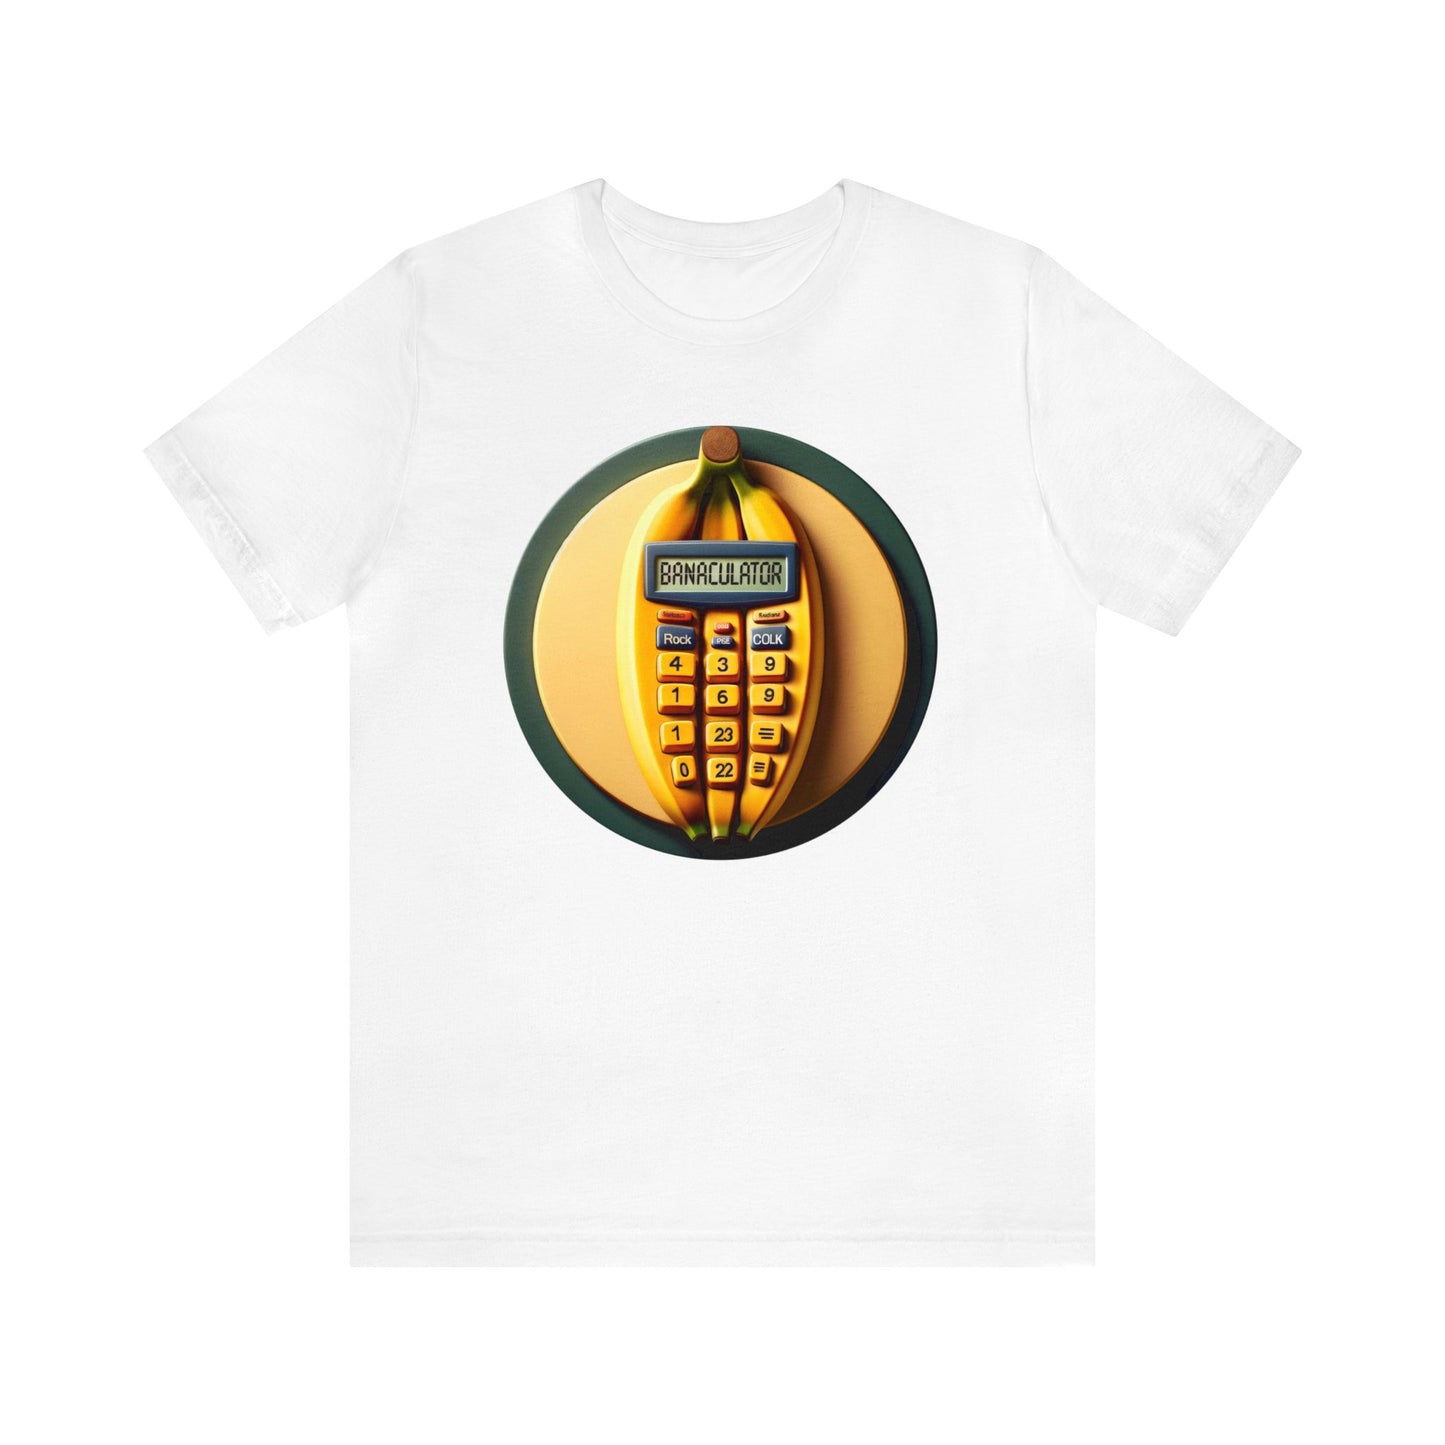 Banaculator: The Banana Calculator Concept T-Shirt, Funny Banana T-Shirt, Funny T-Shirt for Fruit Lovers, Funny Calculator T-Shirt, Funny Tee